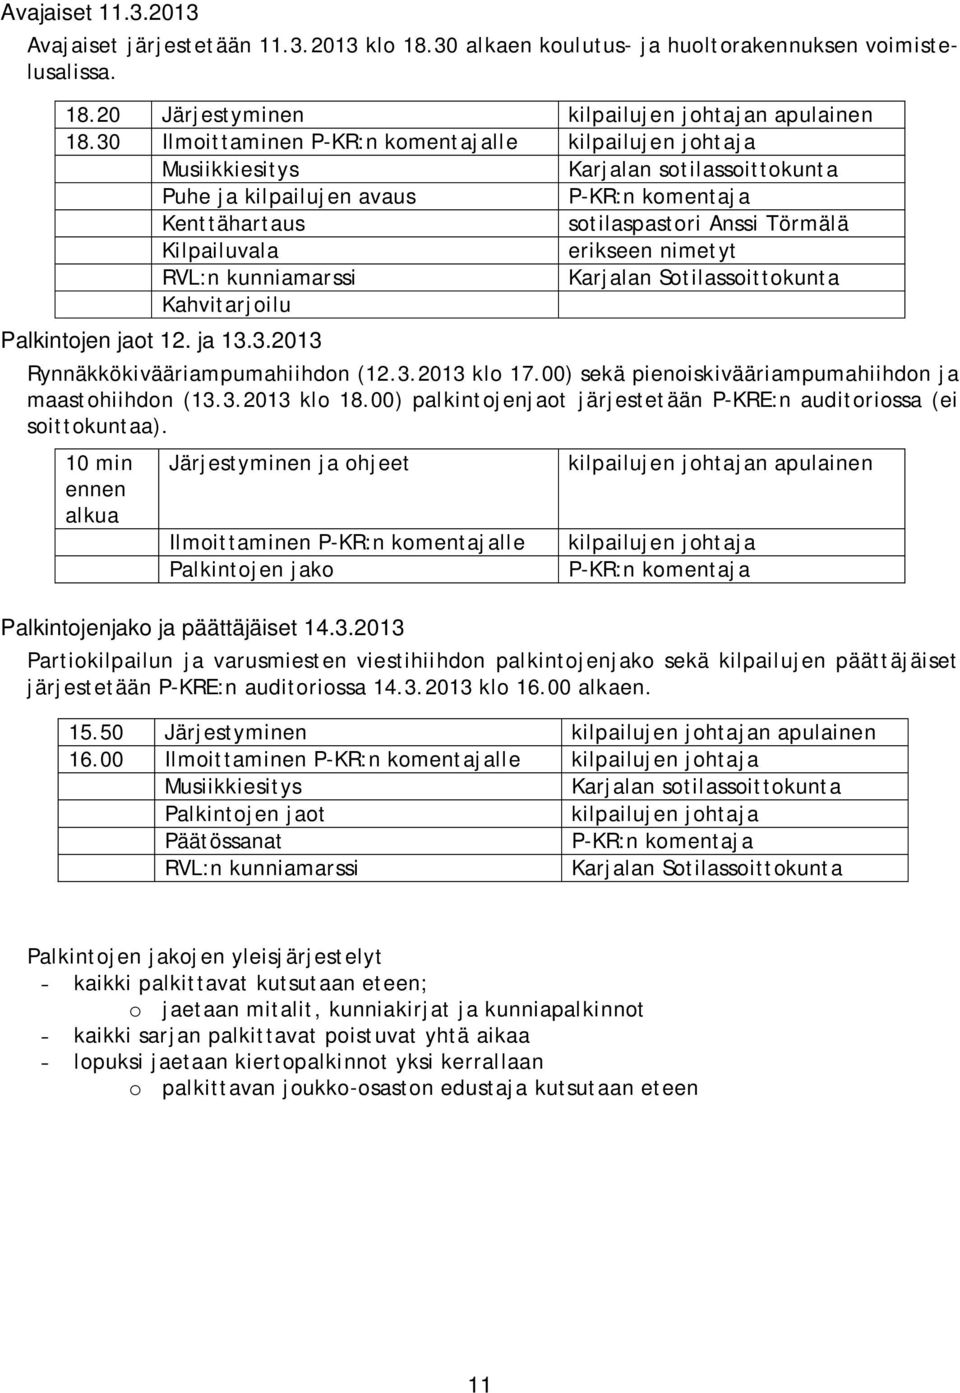 erikseen nimetyt RVL:n kunniamarssi Karjalan Sotilassoittokunta Kahvitarjoilu Palkintojen jaot 12. ja 13.3.2013 Rynnäkkökivääriampumahiihdon (12.3.2013 klo 17.